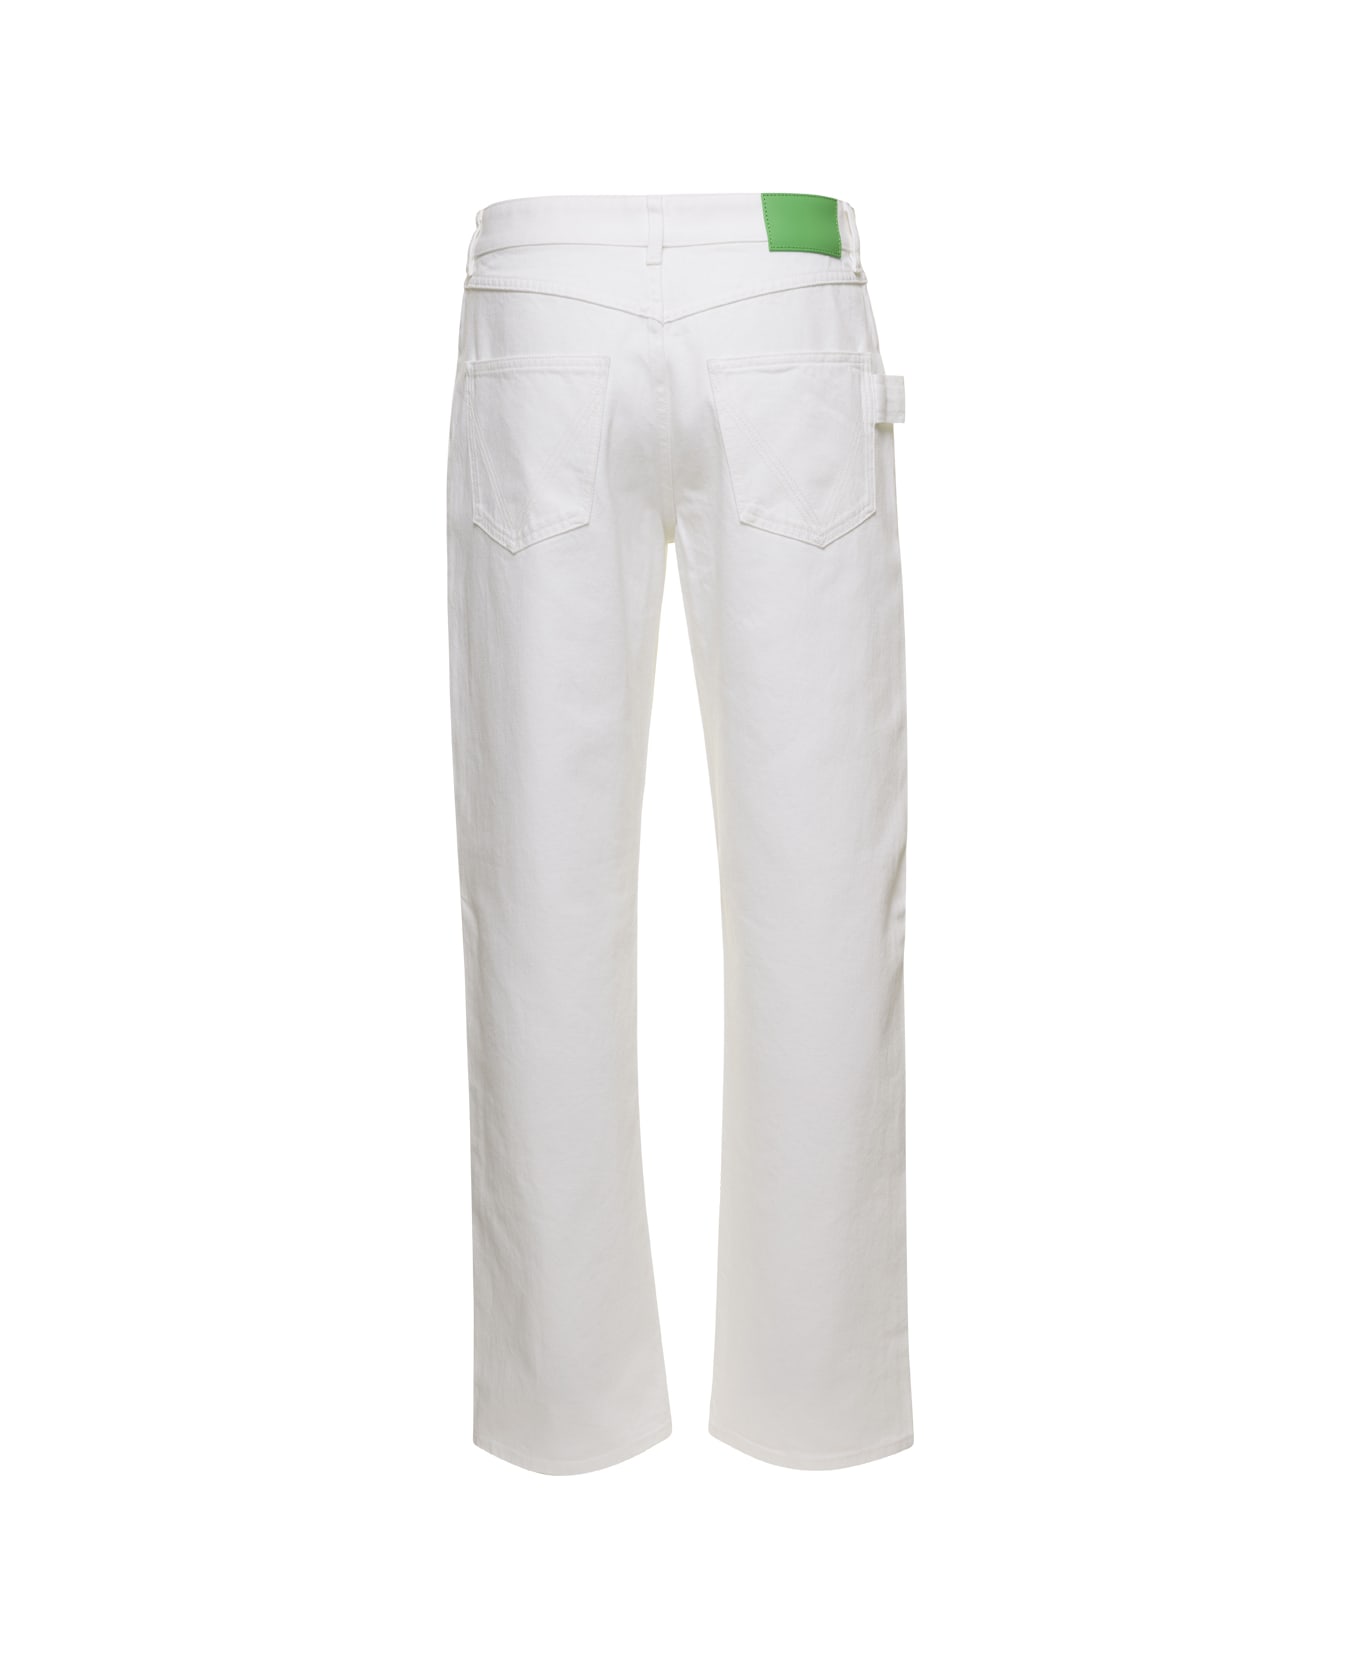 Bottega Veneta Denim Jeans - White